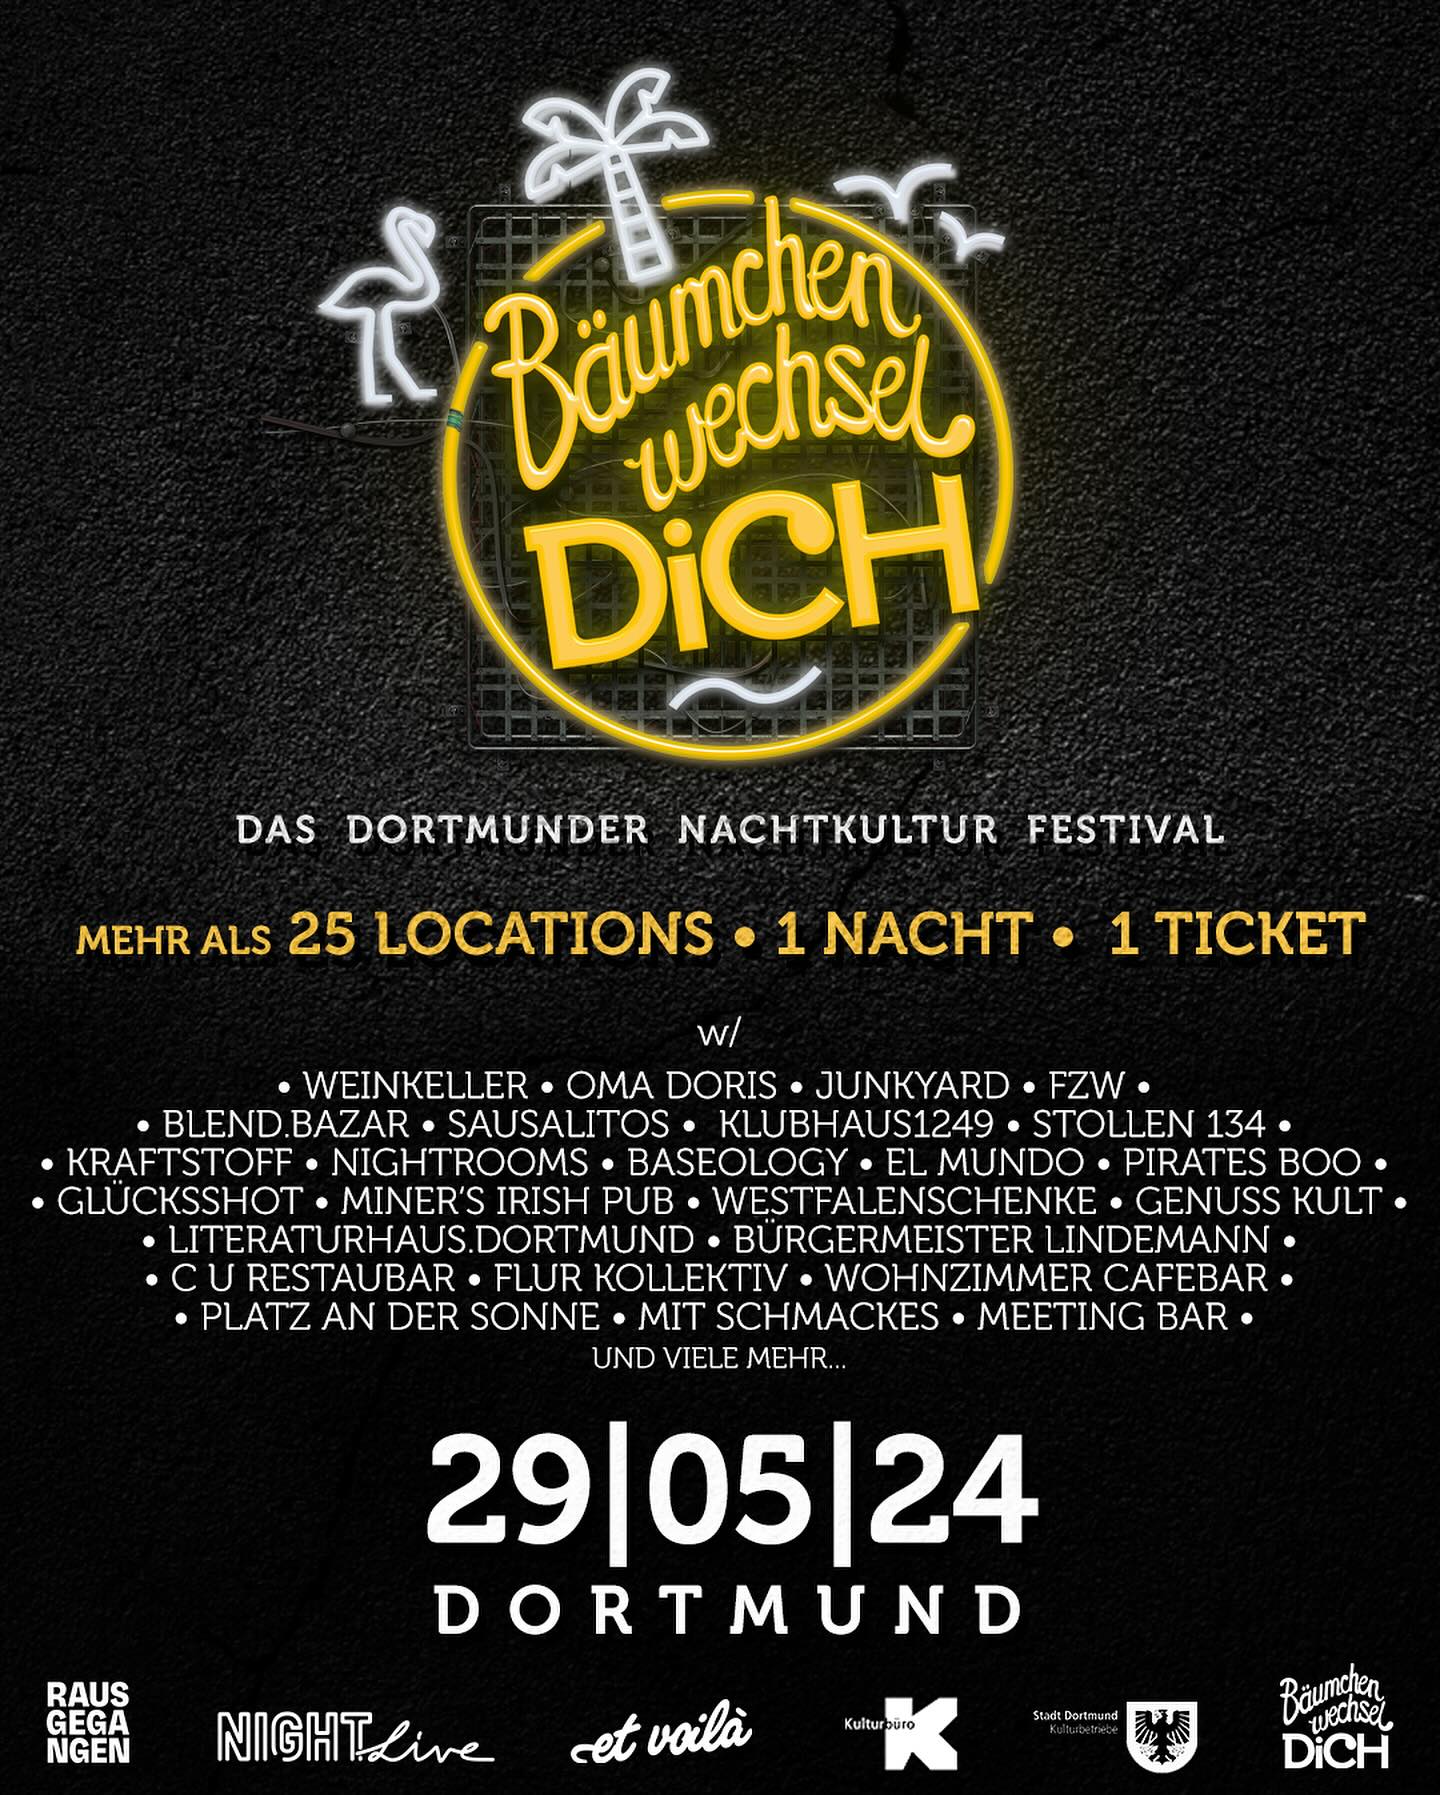 Bäumchen Wechsel Dich 29.05.2024 im FZW in Dortmund